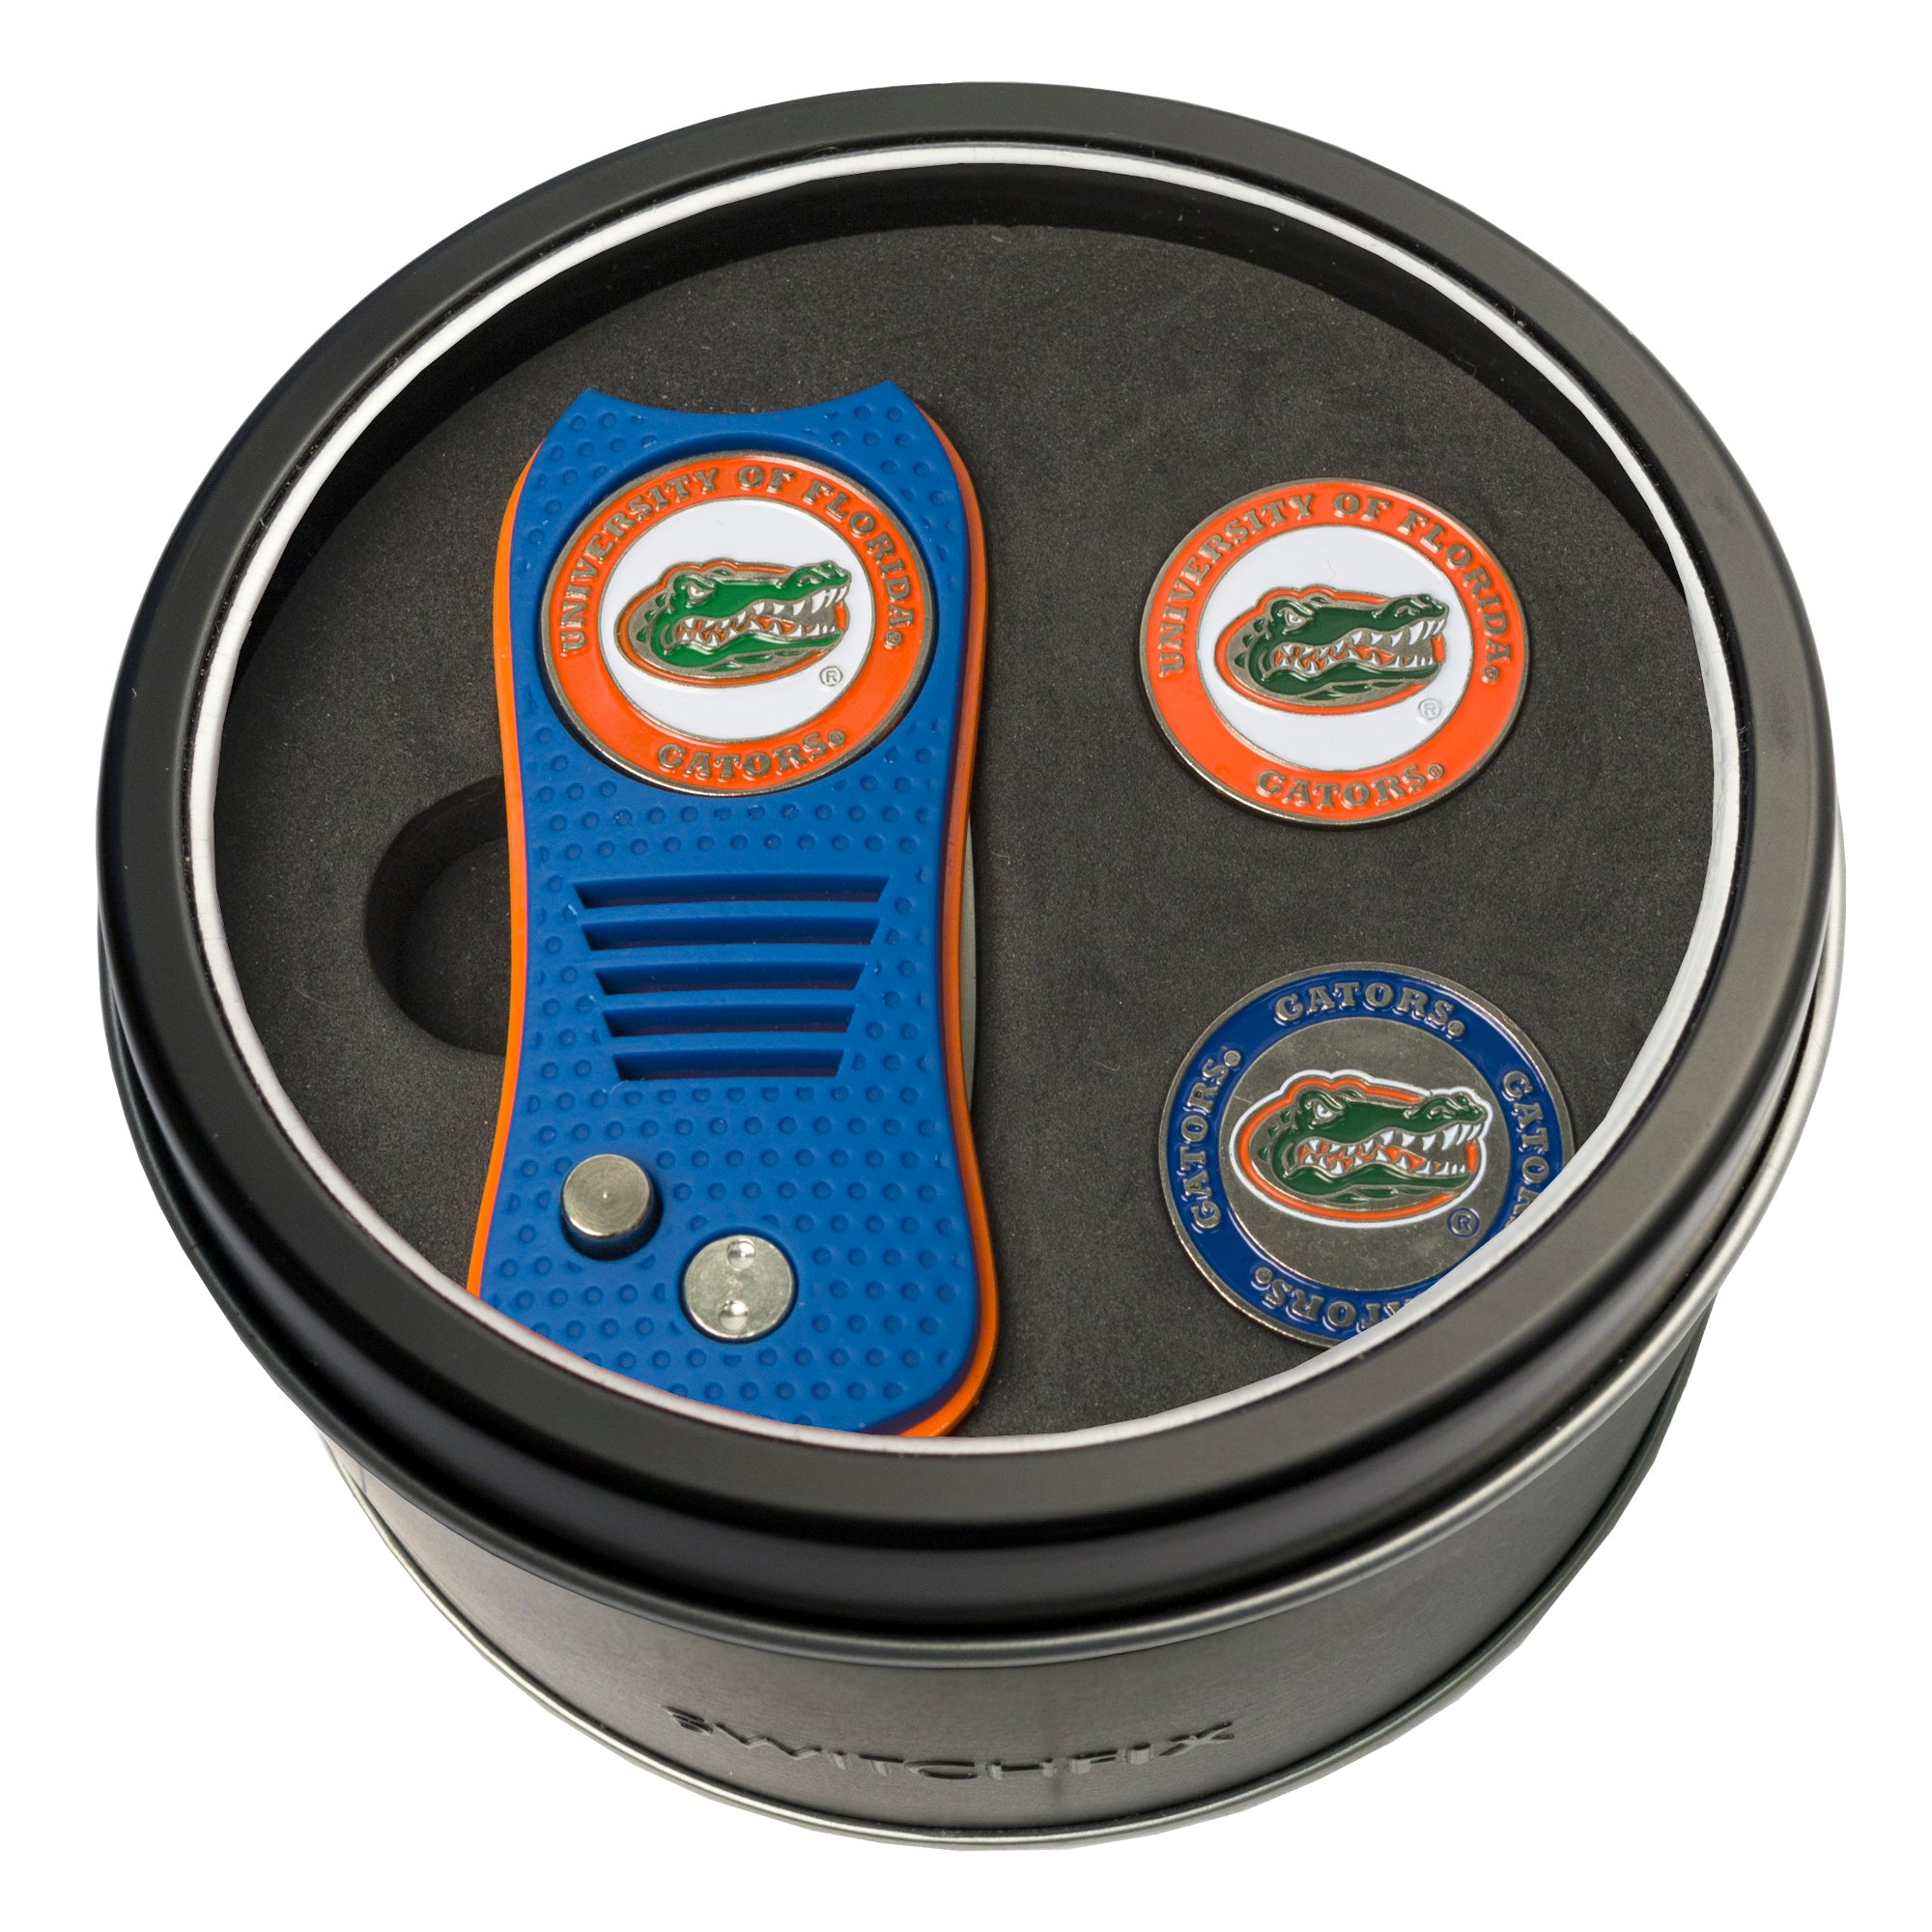 Florida Gators Switchblade Divot Tool + 2 Ball Marker Tin Gift Set